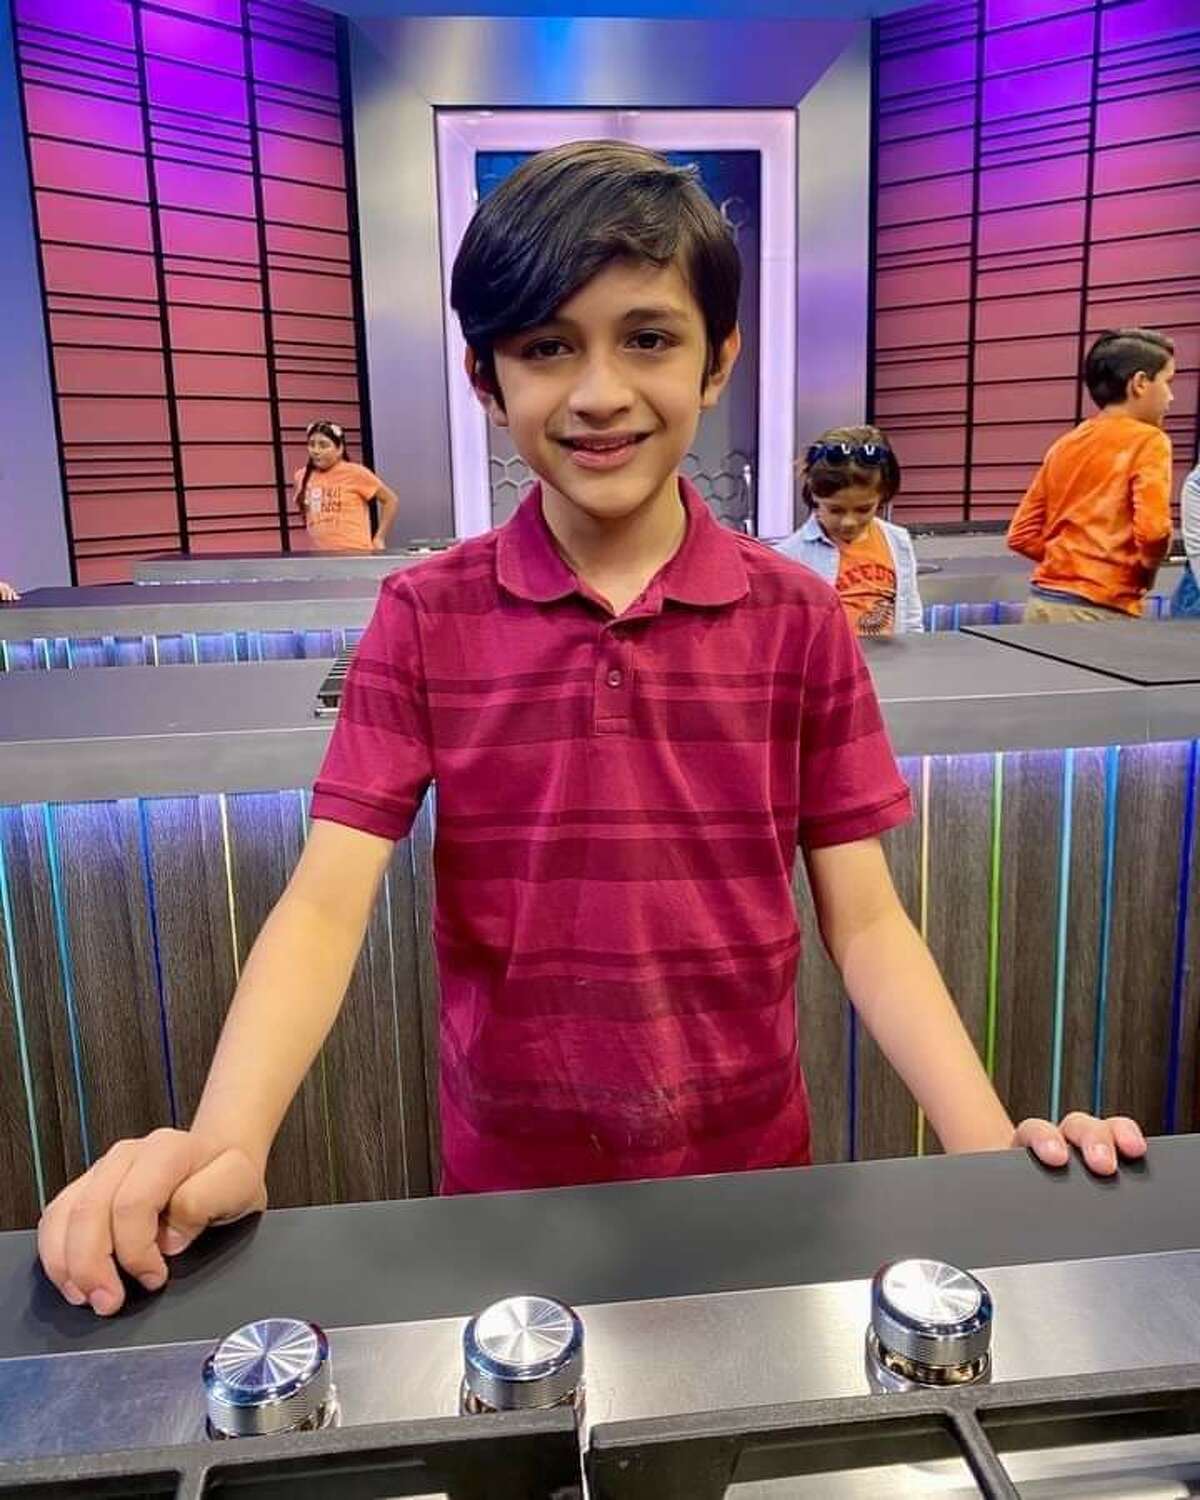 Nuevo Laredo boy Carlos Flores, 8, is one of the final seven contestants of MasterChef Junior Mexico 2022.